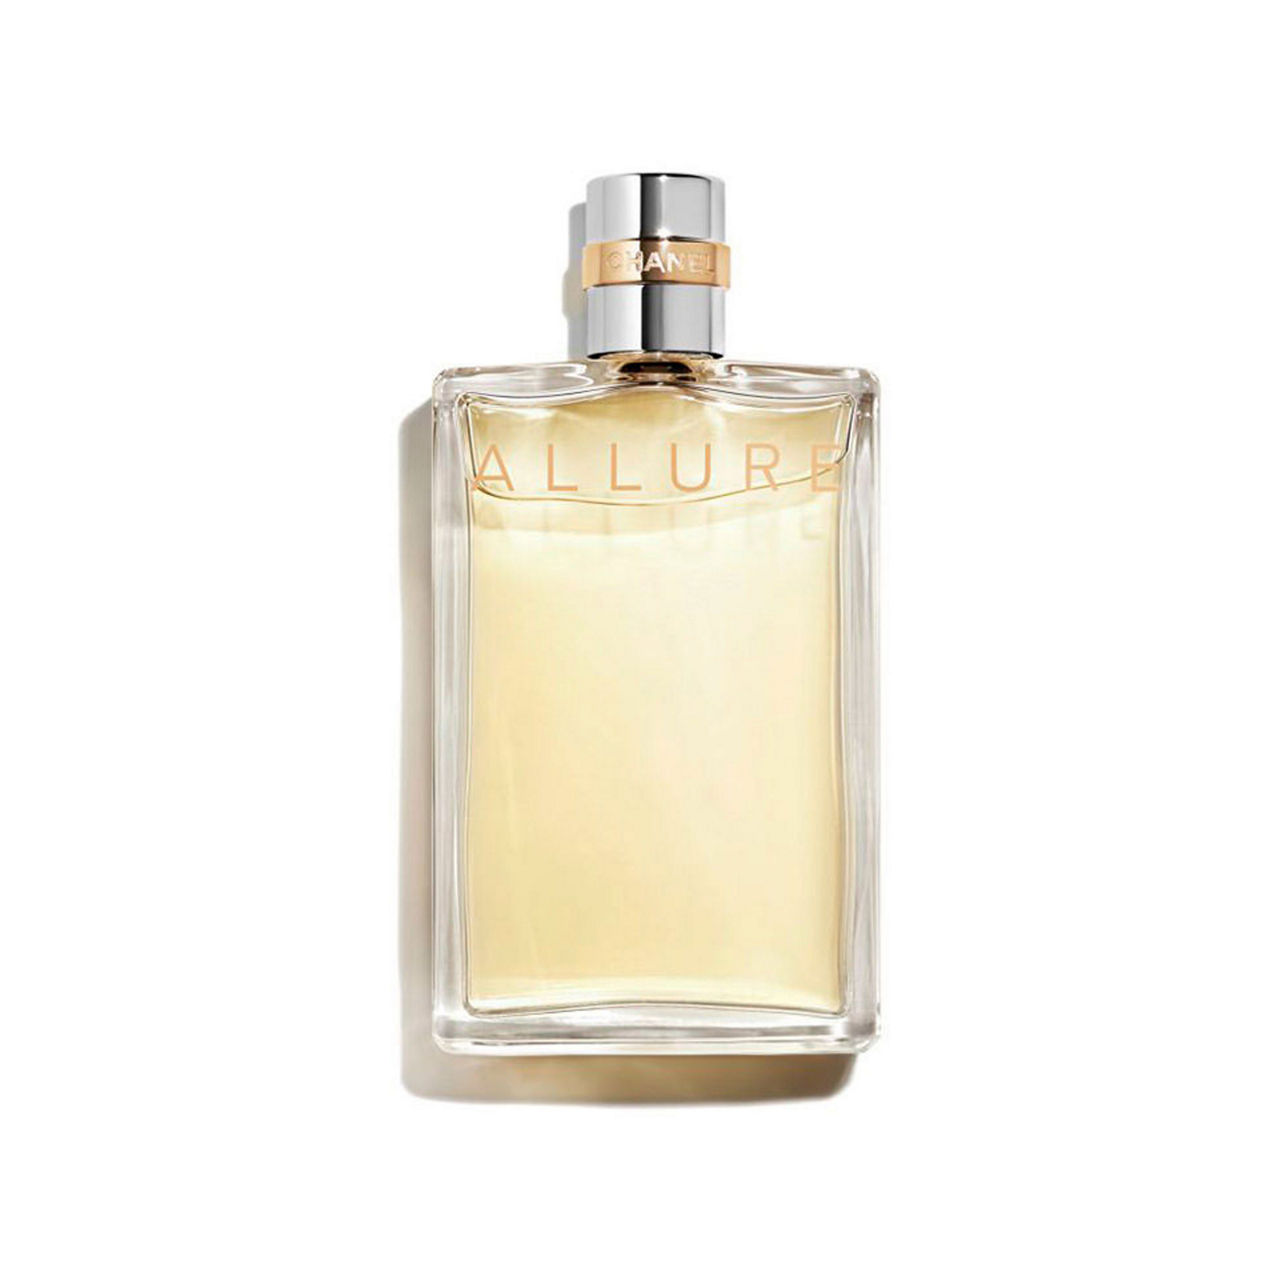 Dubizar.com - Oman - Romantic and fragrance Chanel Allure Eau De Women's  Parfum 50ml Shop Now ➜